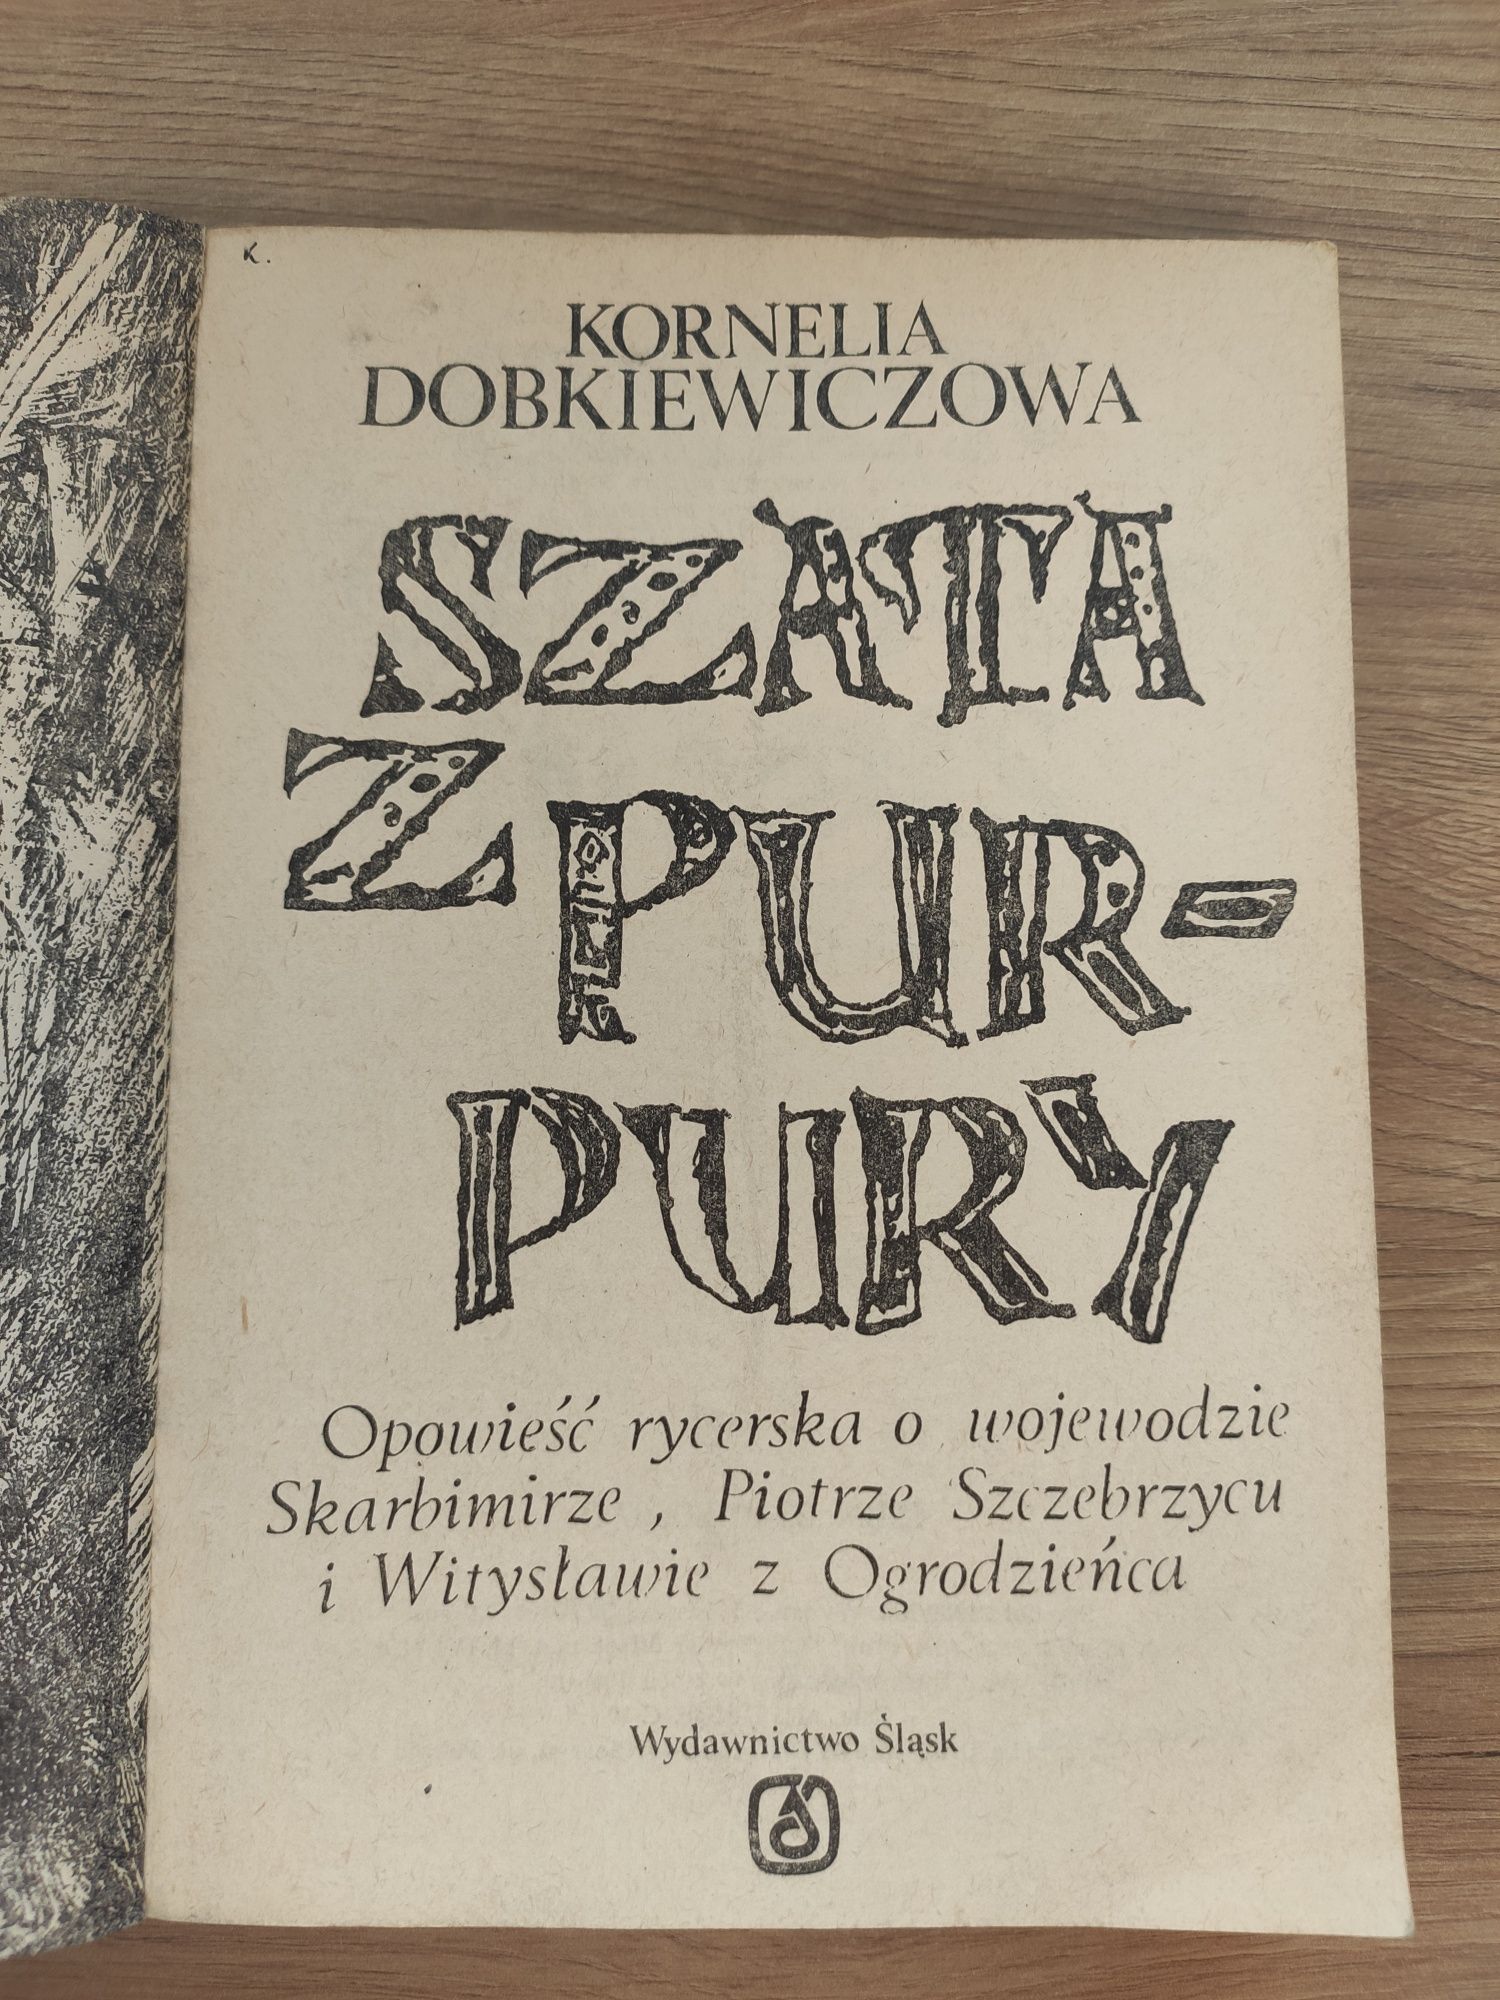 stara książka Kornelia dobkiewiczowa szata z purpury